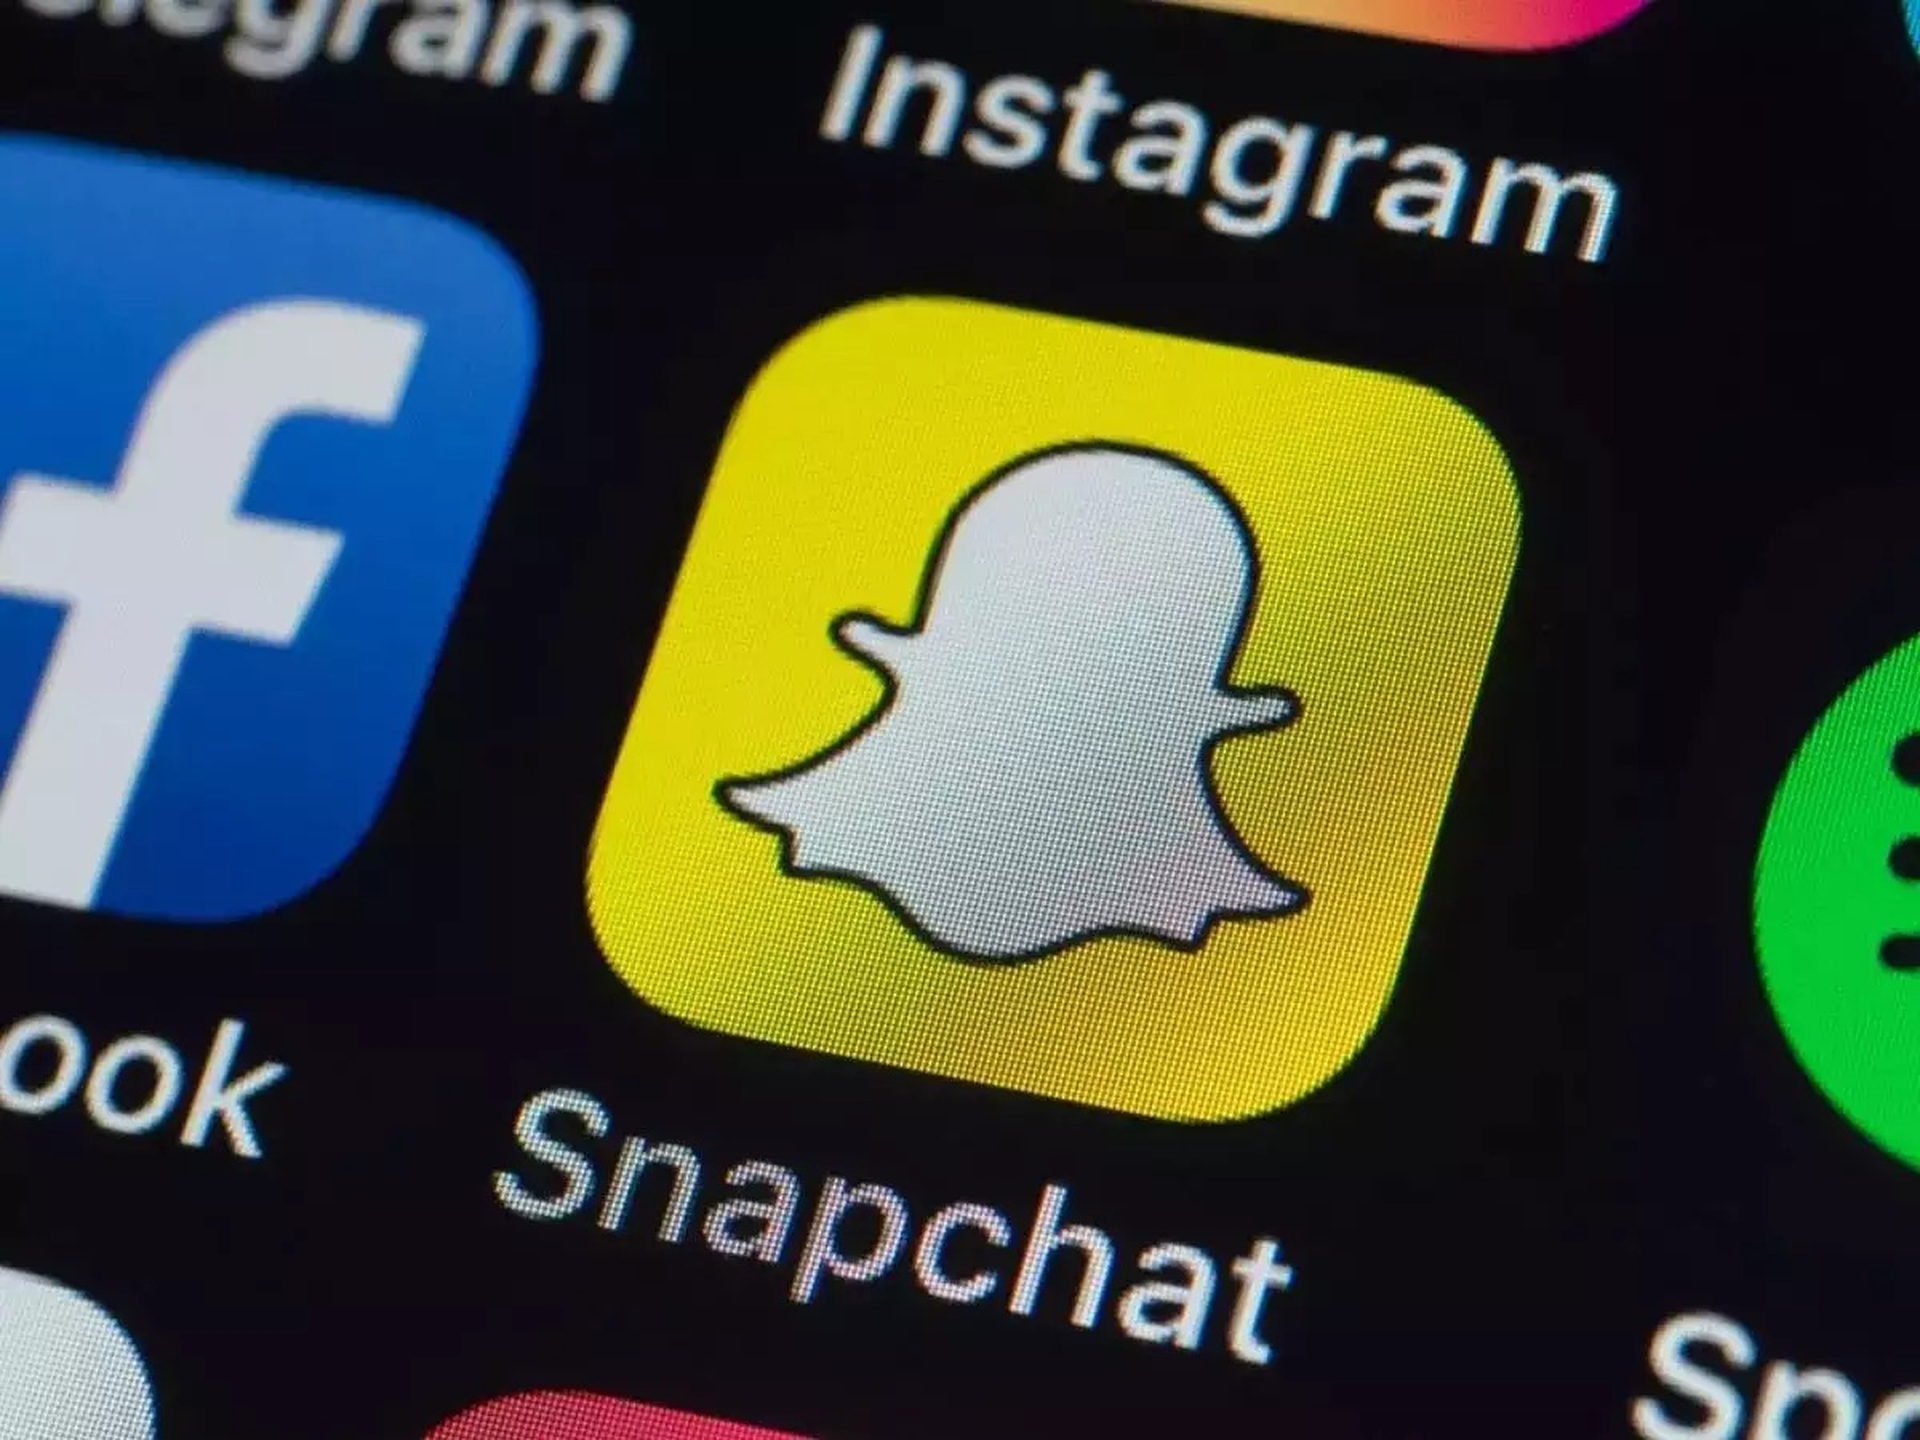 Dans cet article, nous allons expliquer comment ajouter une annonce eBay sur Snapchat, afin que vous puissiez partager vos annonces avec vos connexions Snapchat.